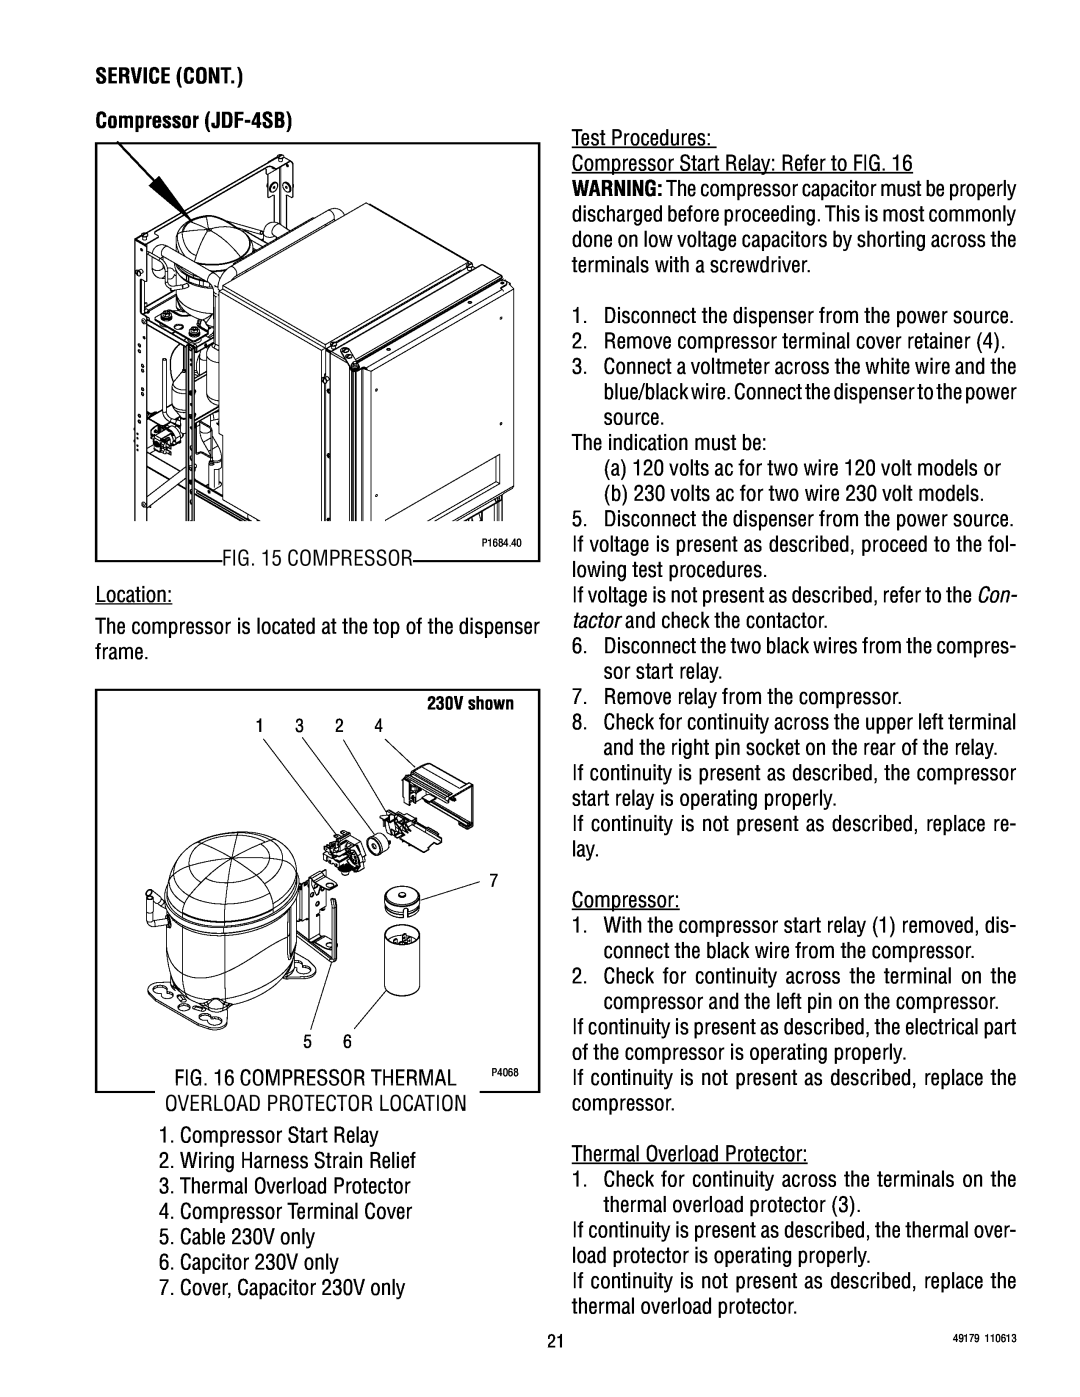 Bunn JDF-4D manual SERVICE CONT Compressor JDF-4SB, 230V shown 